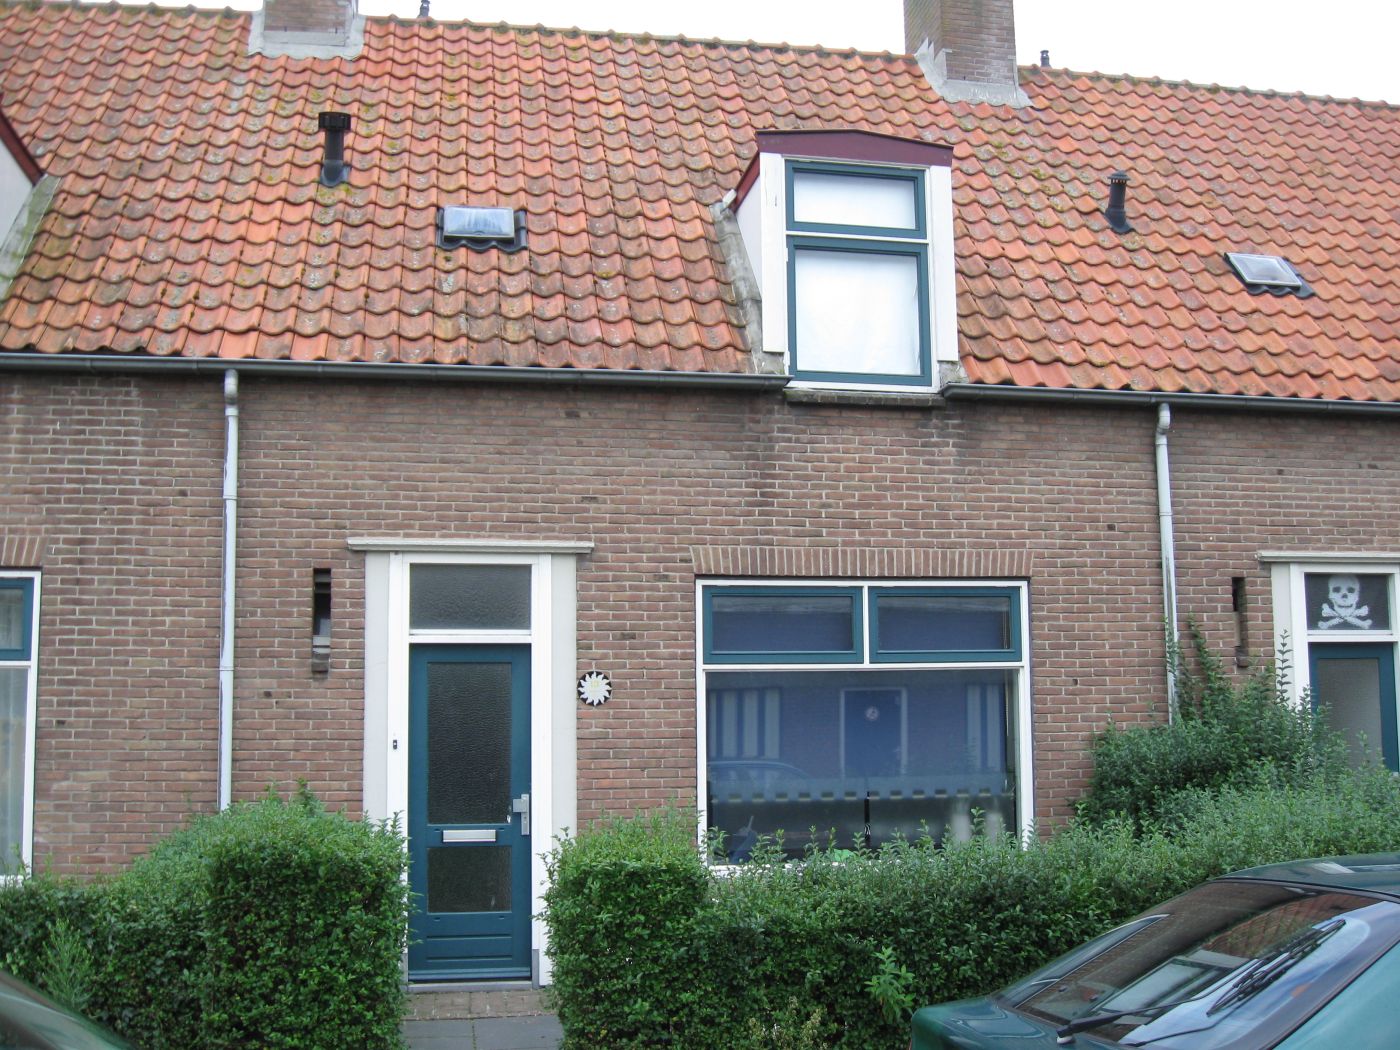 Beatrixstraat 13, 4486 AE Colijnsplaat, Nederland